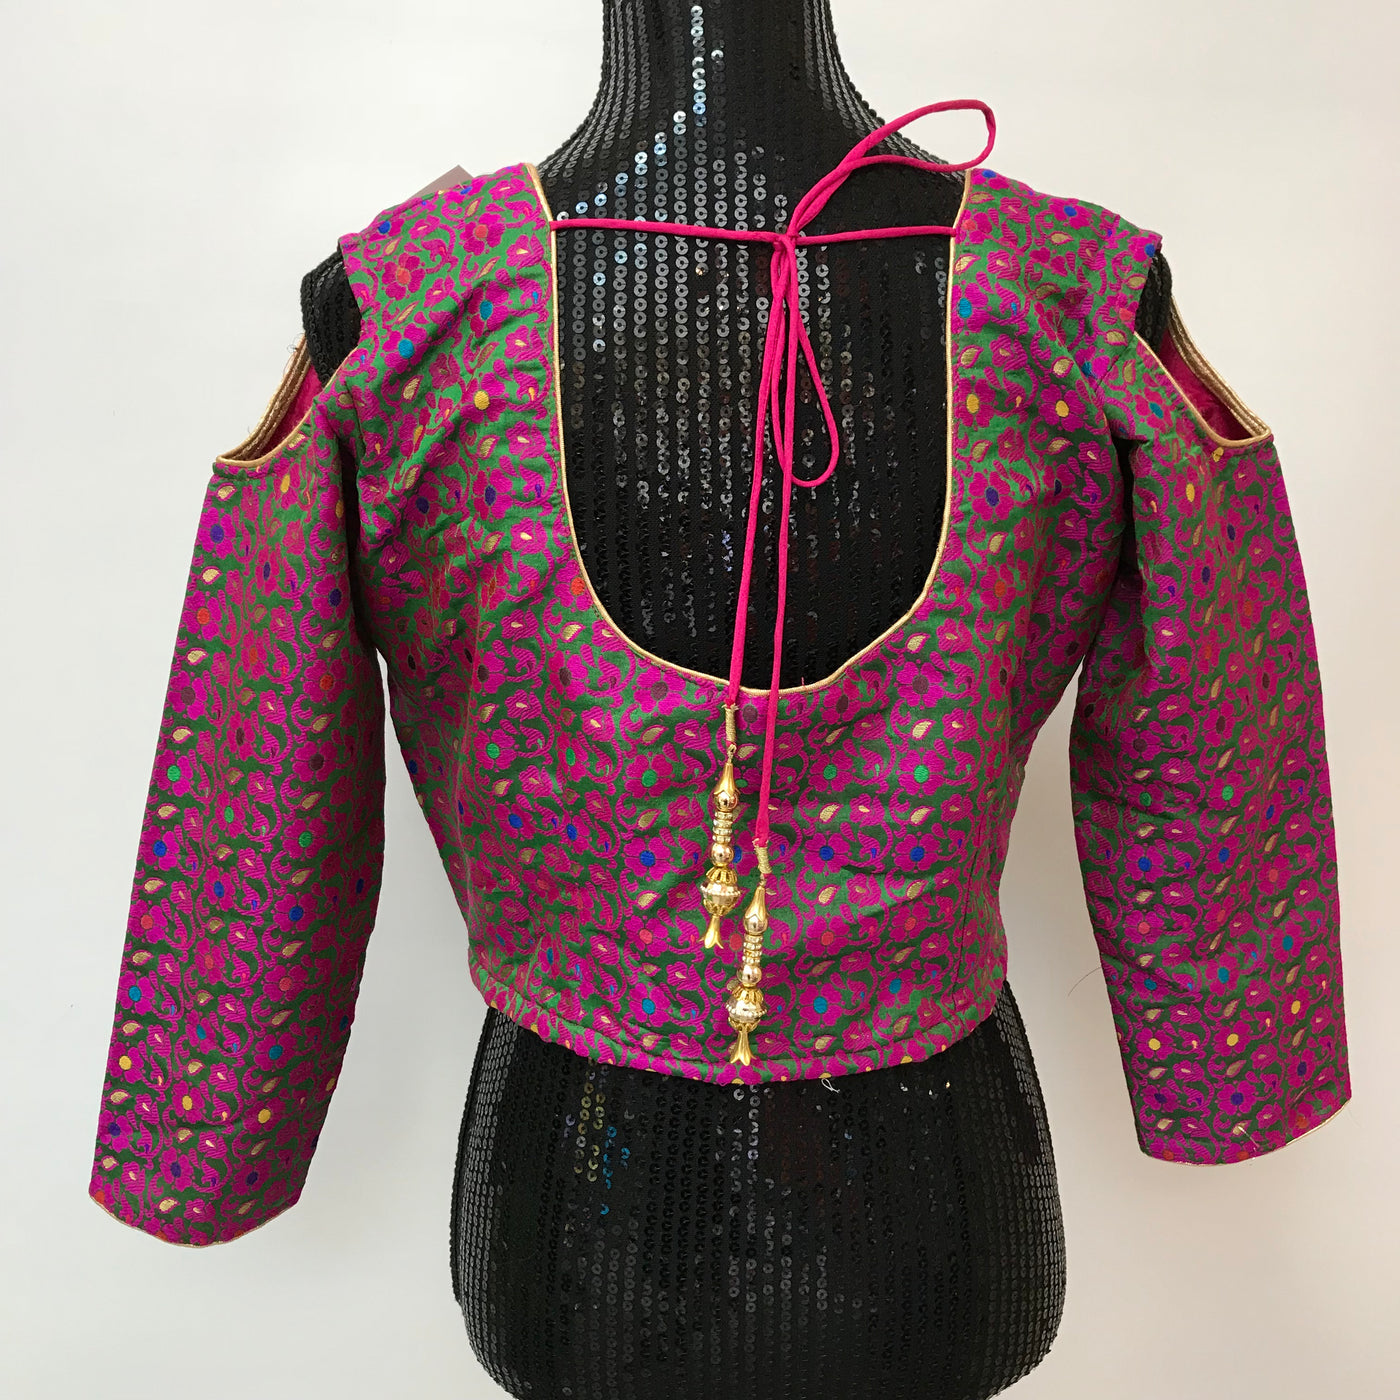 Blouse Designs: हैवी ब्रेस्ट के लिए परफेक्ट रहेंगे जैकेट स्टाइल ब्लाउज के  ये खास डिजाइंस | jacket style blouse designs for heavy breast | HerZindagi